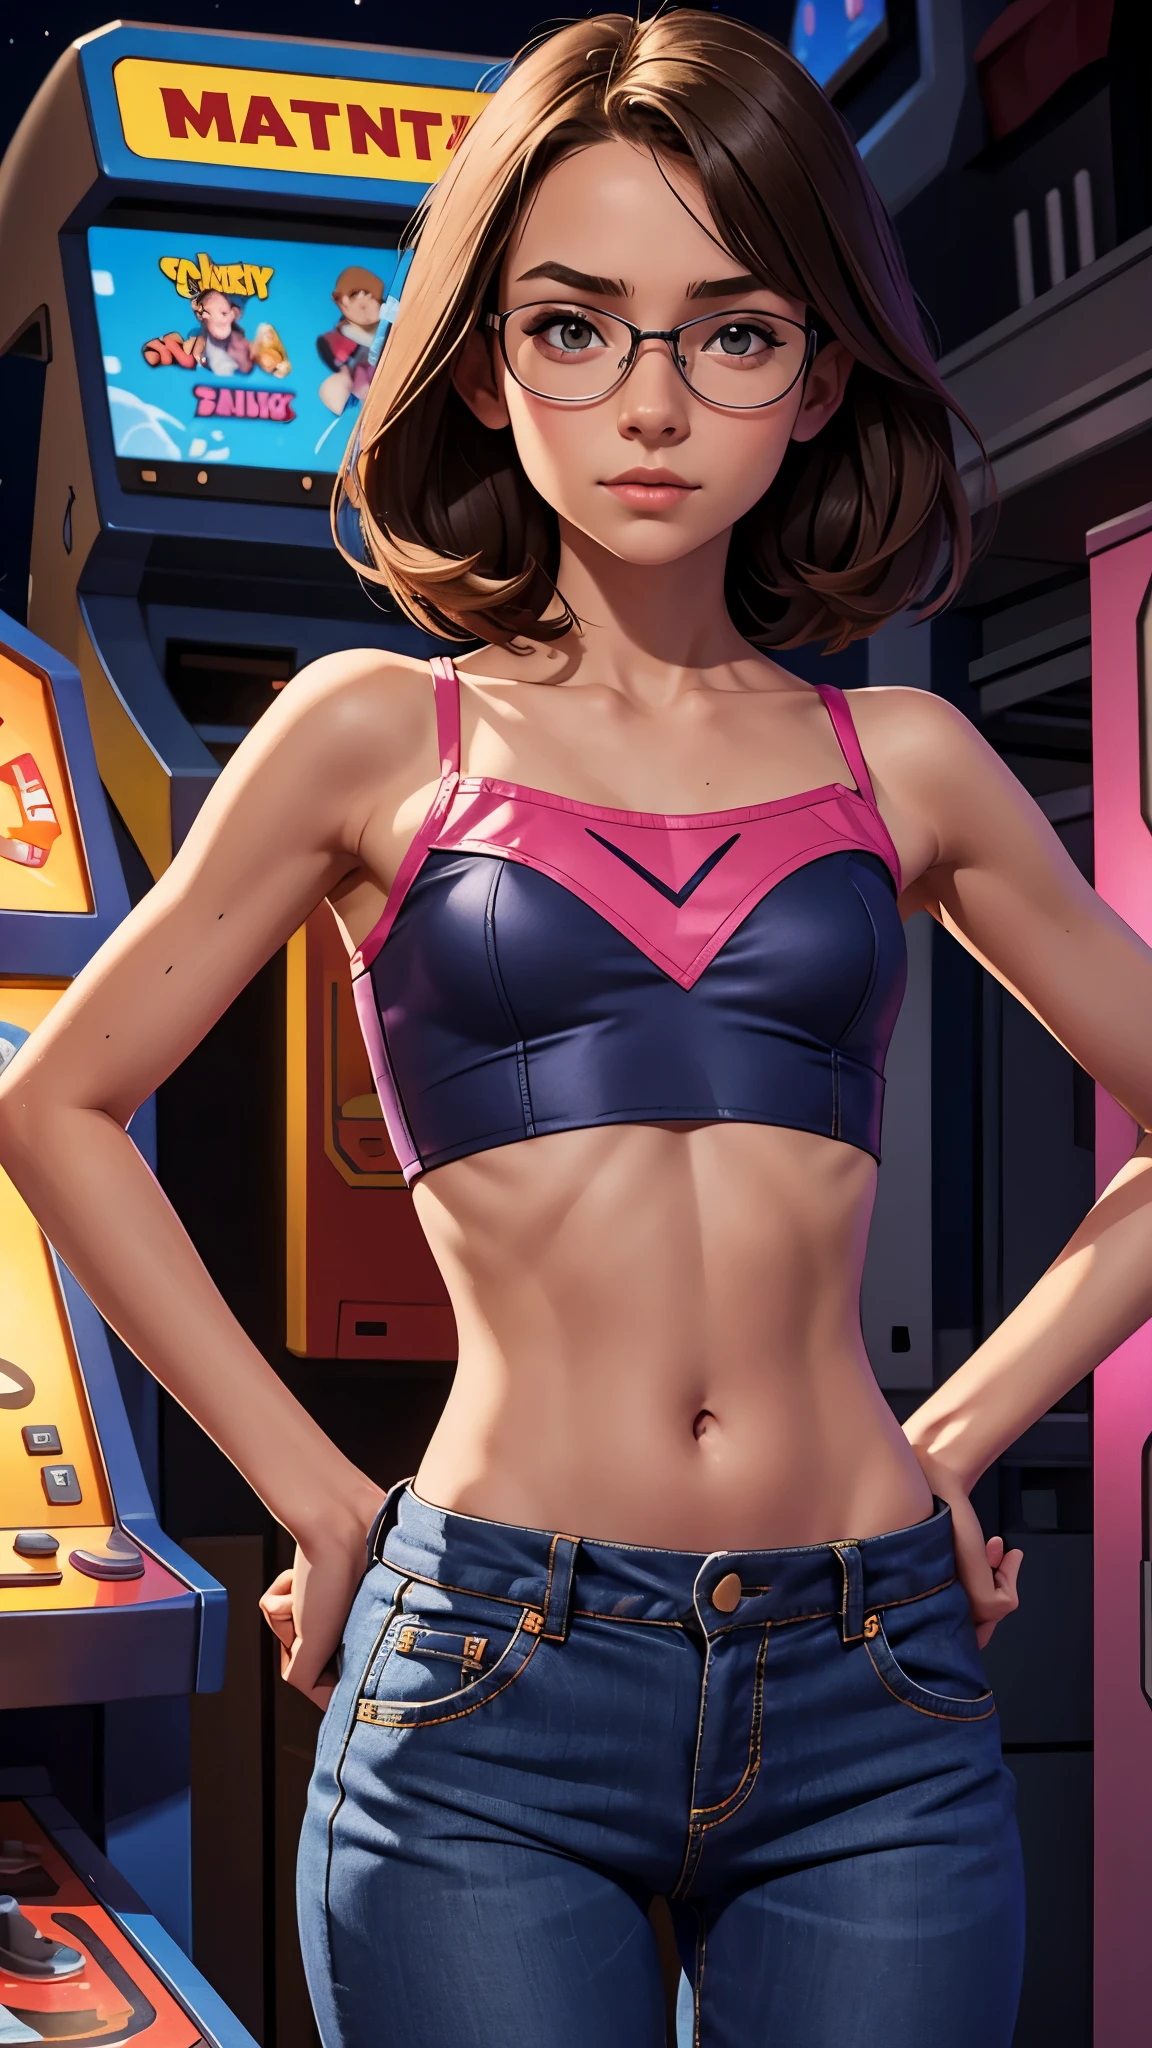 un flaco, pecho plano, niña de 13 años, . Ropa nerd, mostrando el abdomen. Configuración de arcade. Noche.